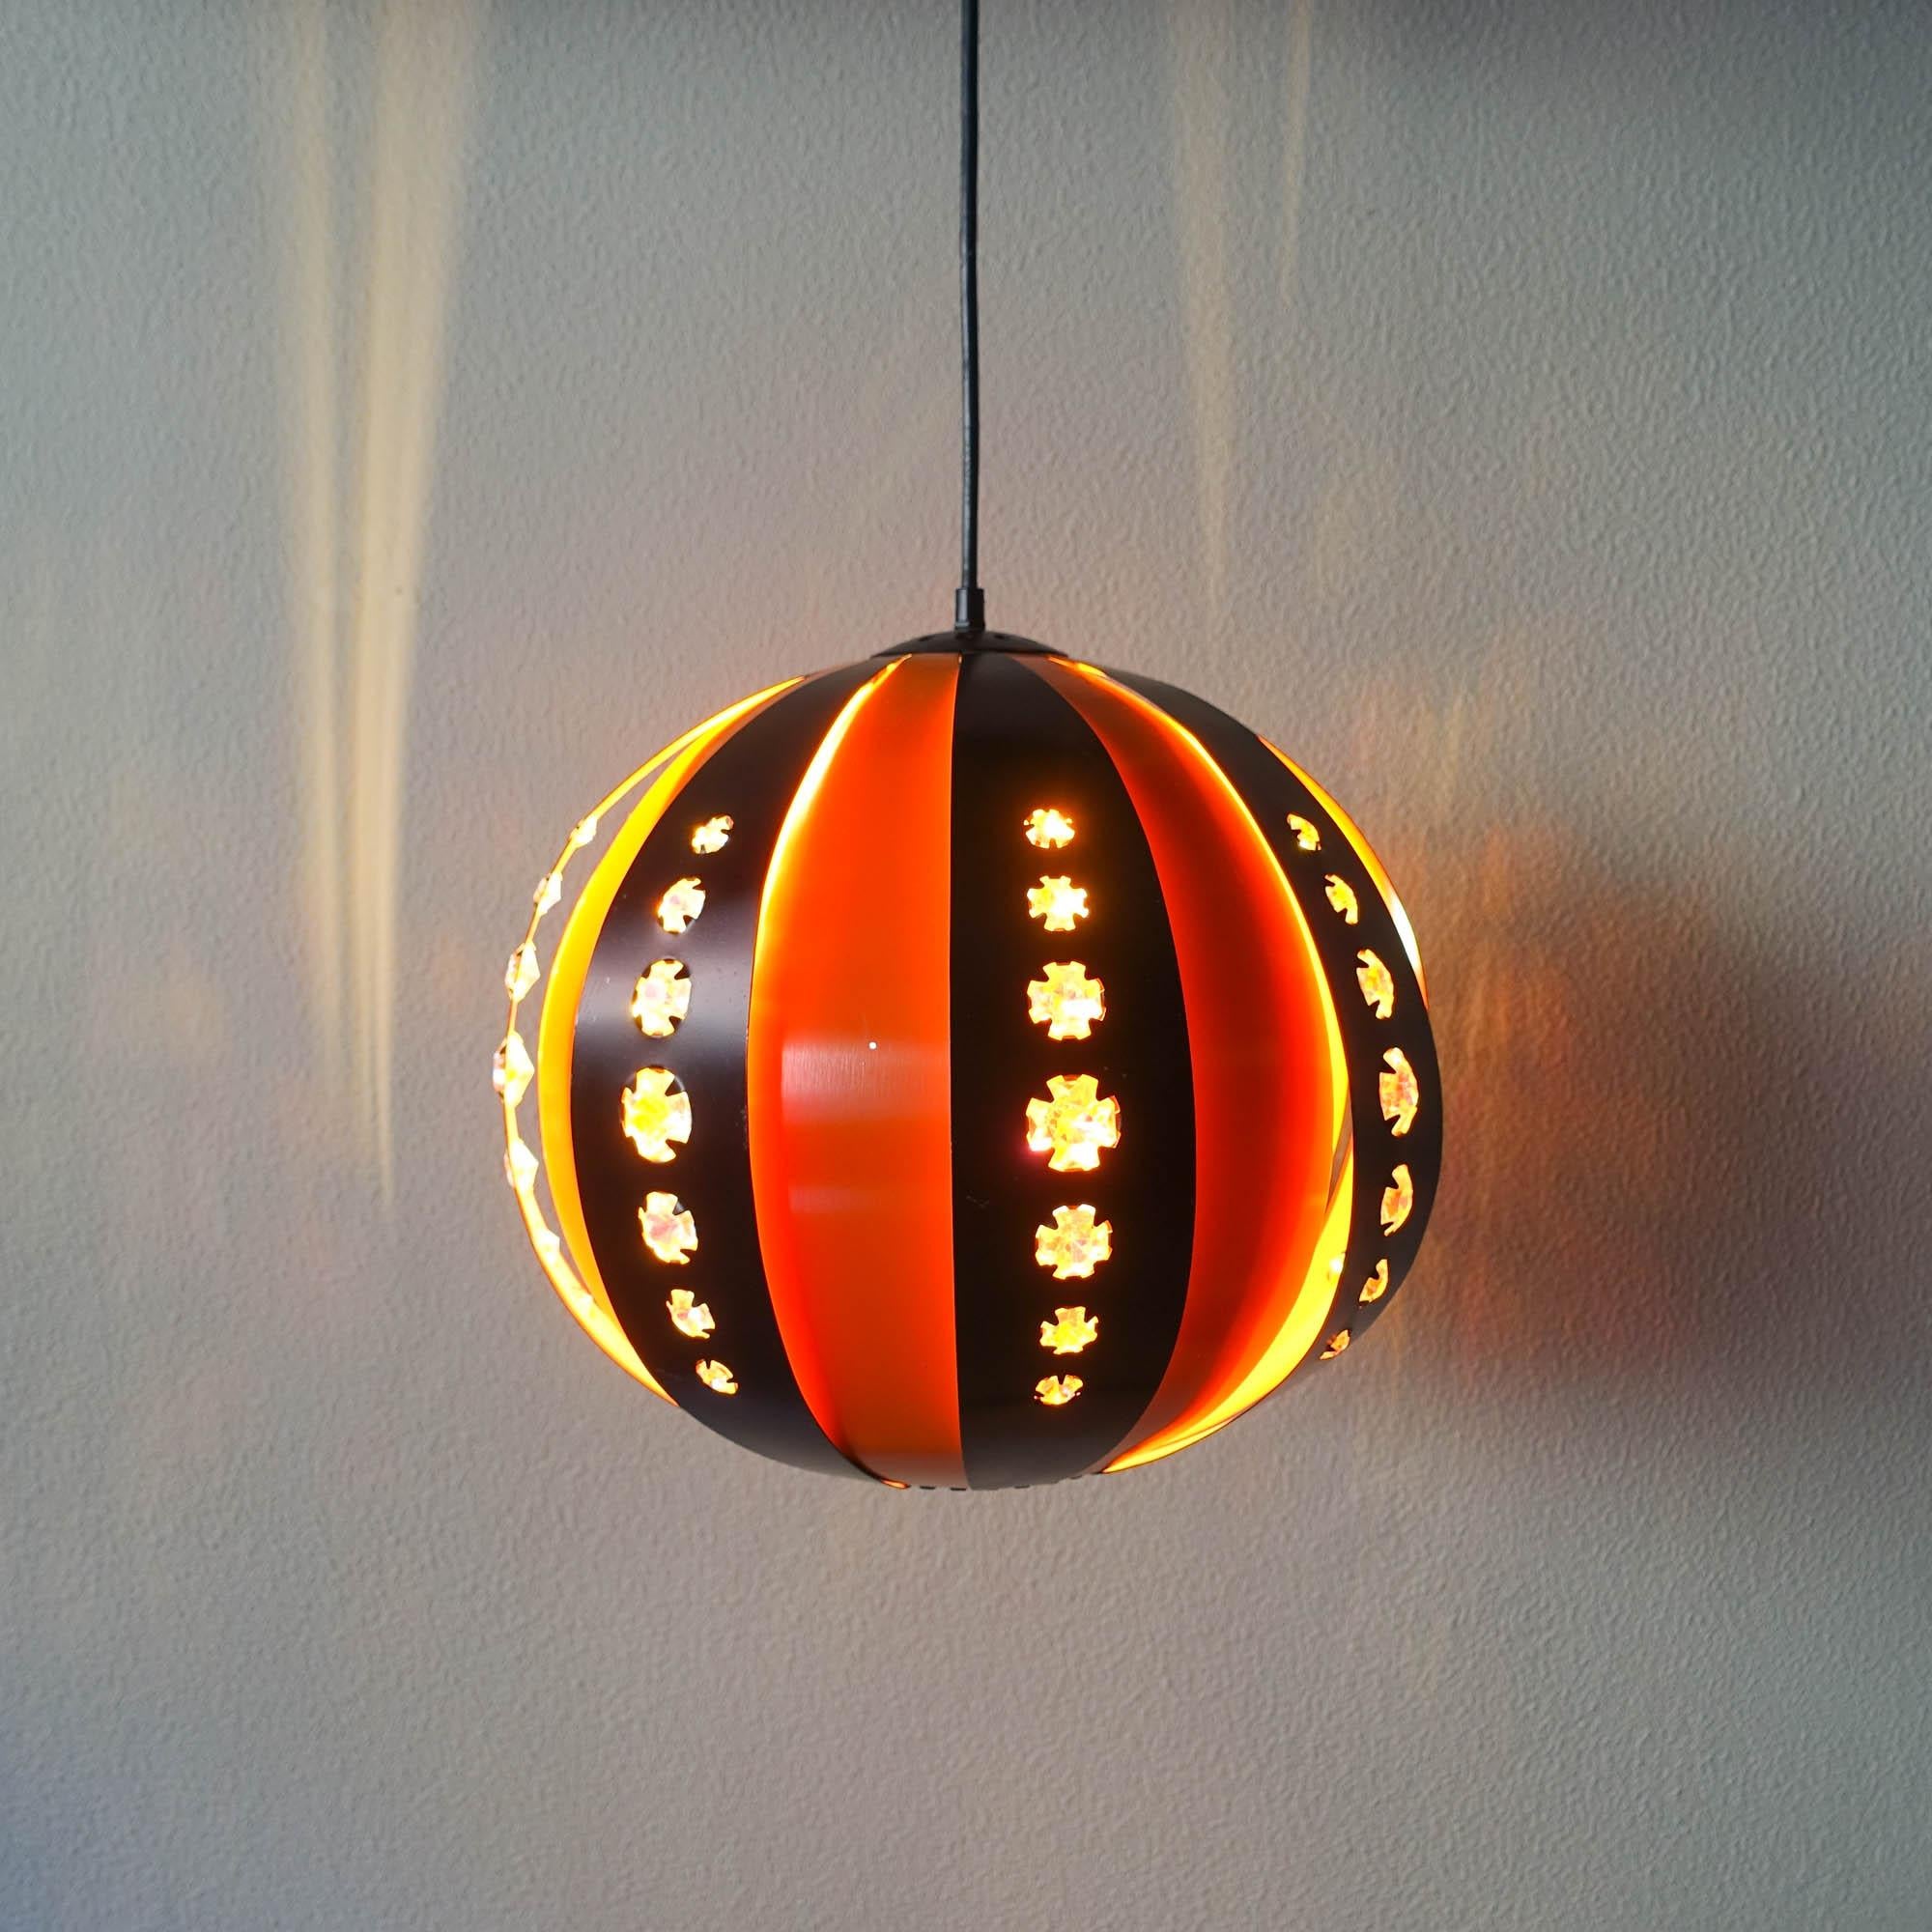 Cette lampe suspendue a été conçue par Werner Schou pour Coronell Elektro, au Danemark, dans les années 1907. La lampe est faite d'aluminium en noir et orange, avec des inserts en verre dans la partie noire. Ces verres reflètent la lumière et